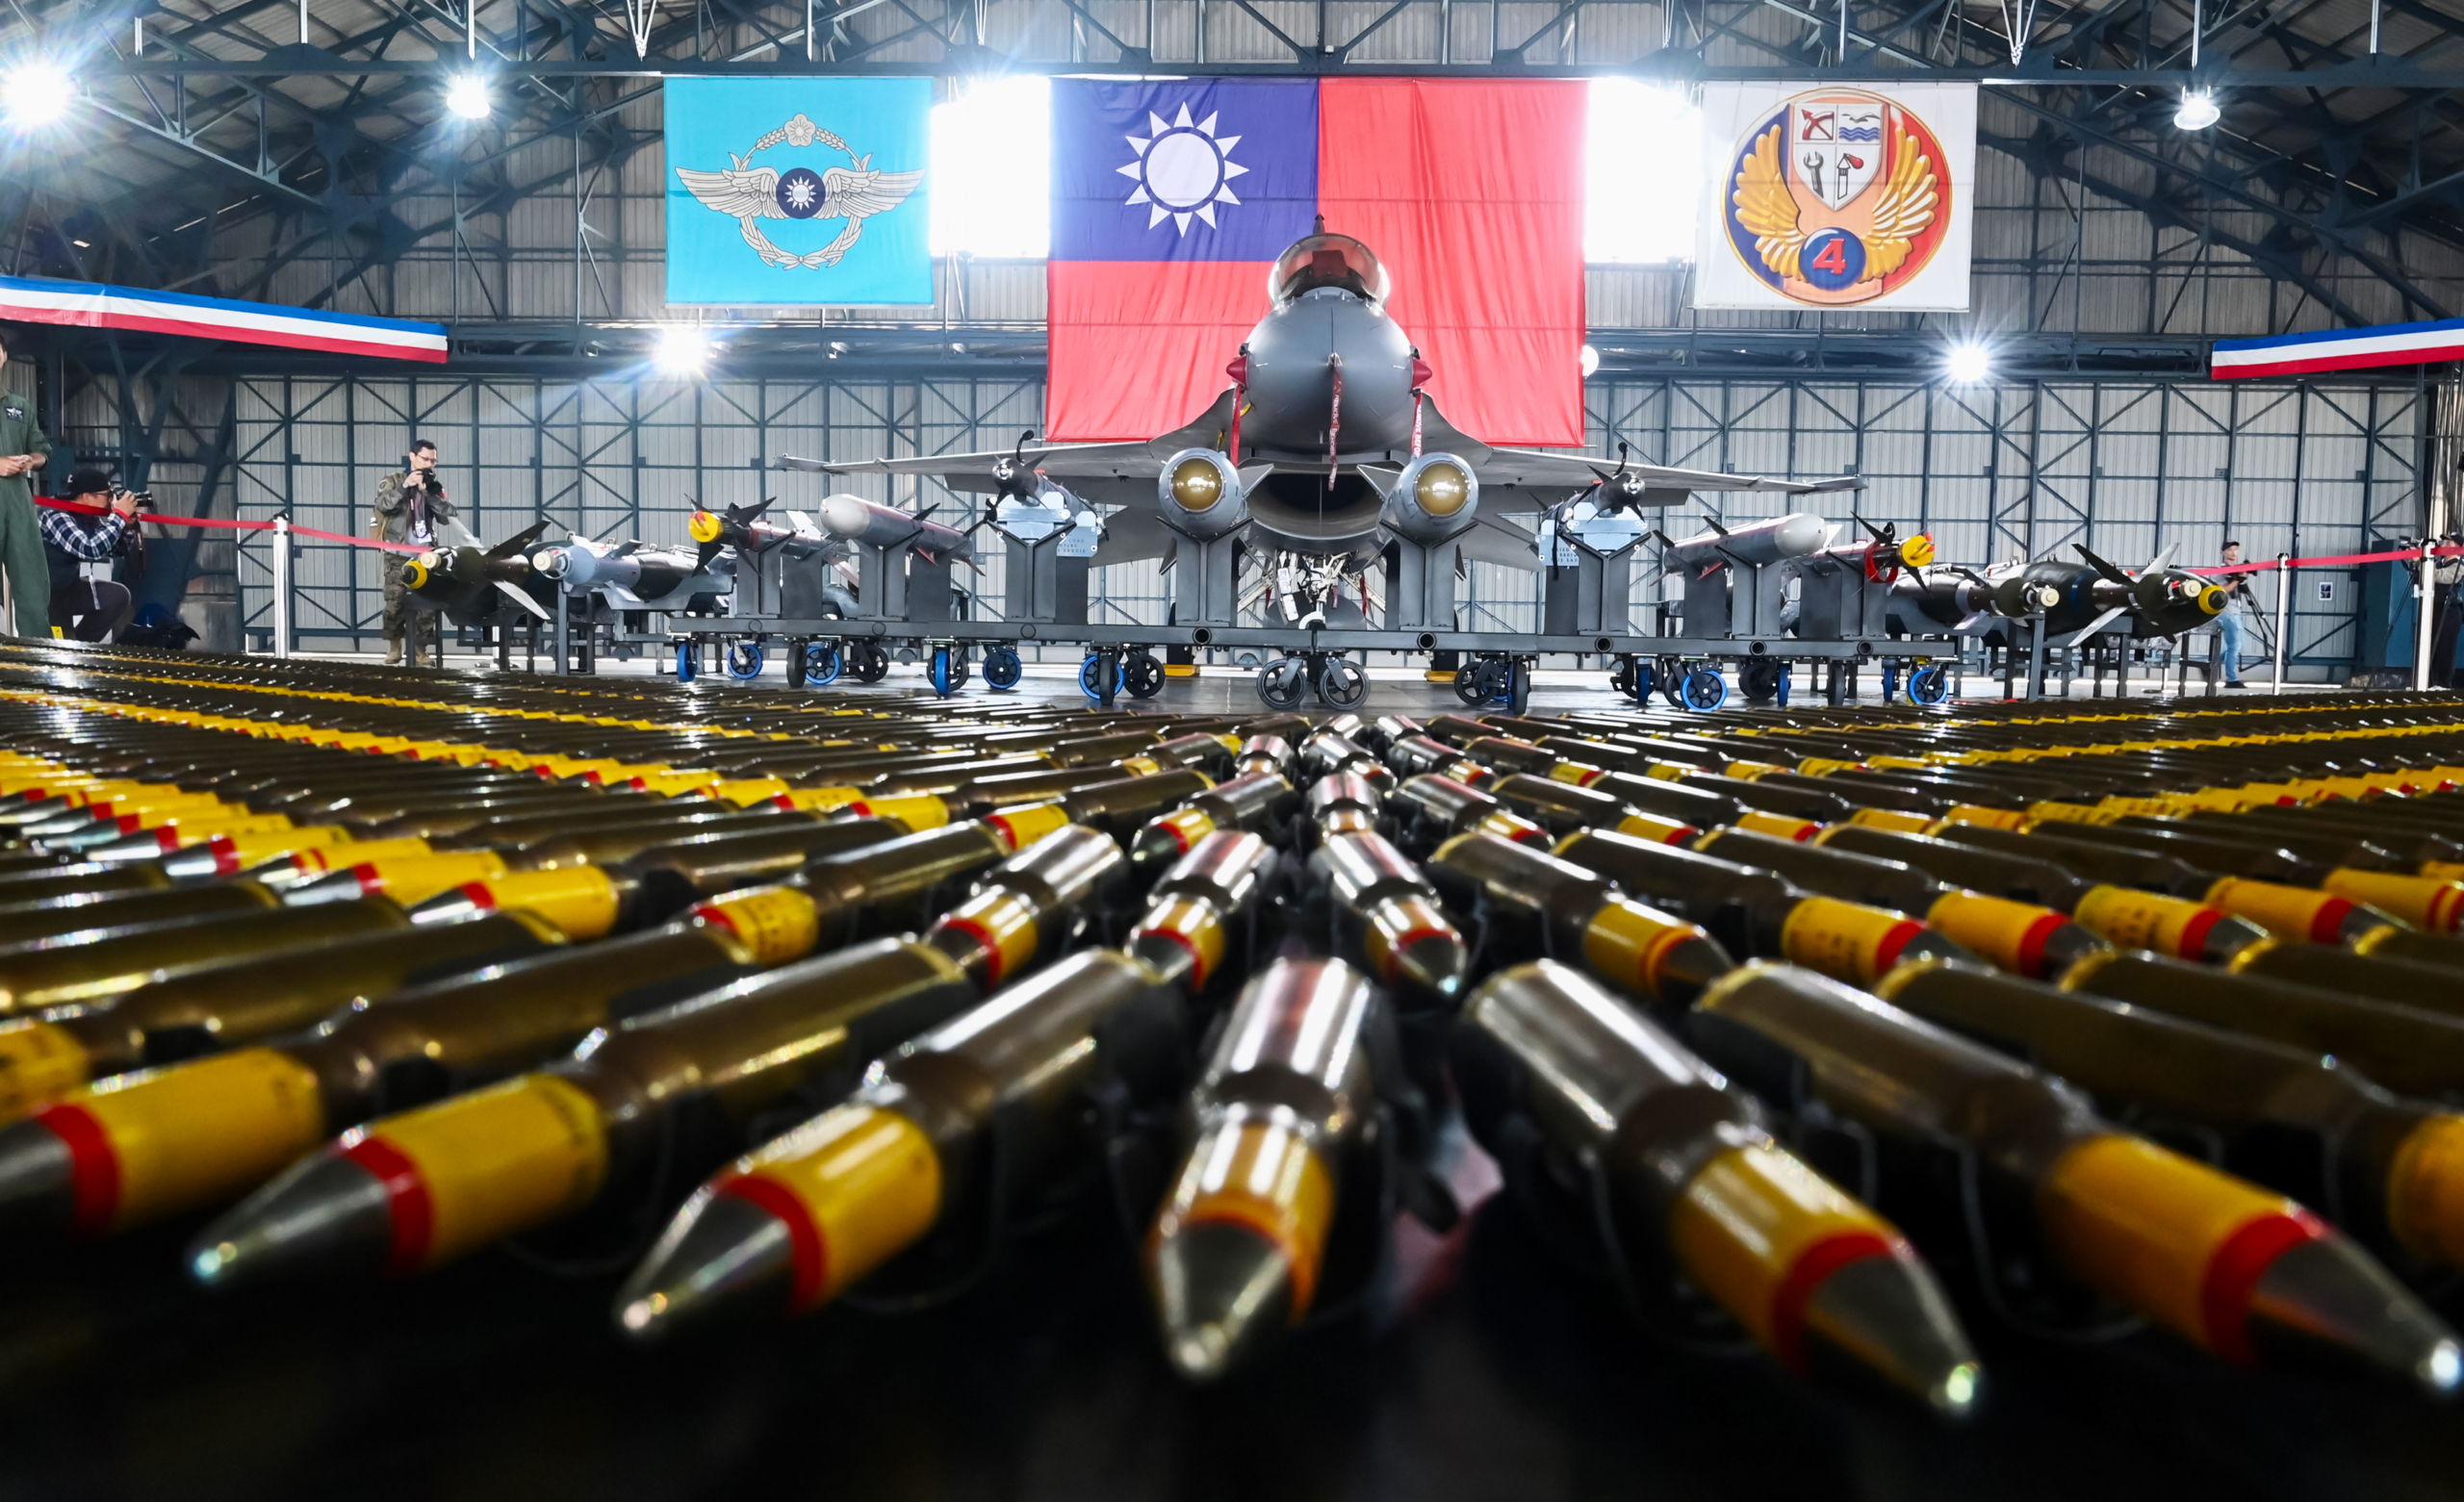 Một chiến đấu cơ F-16V do Hoa Kỳ sản xuất có trang bị vũ khí được trưng bày trong cuộc tập trận tại căn cứ quân sự ở Gia Nghĩa, miền nam Đài Loan, vào ngày 15/01/2020. (Ảnh: Sam Yeh/AFP qua Getty Images)